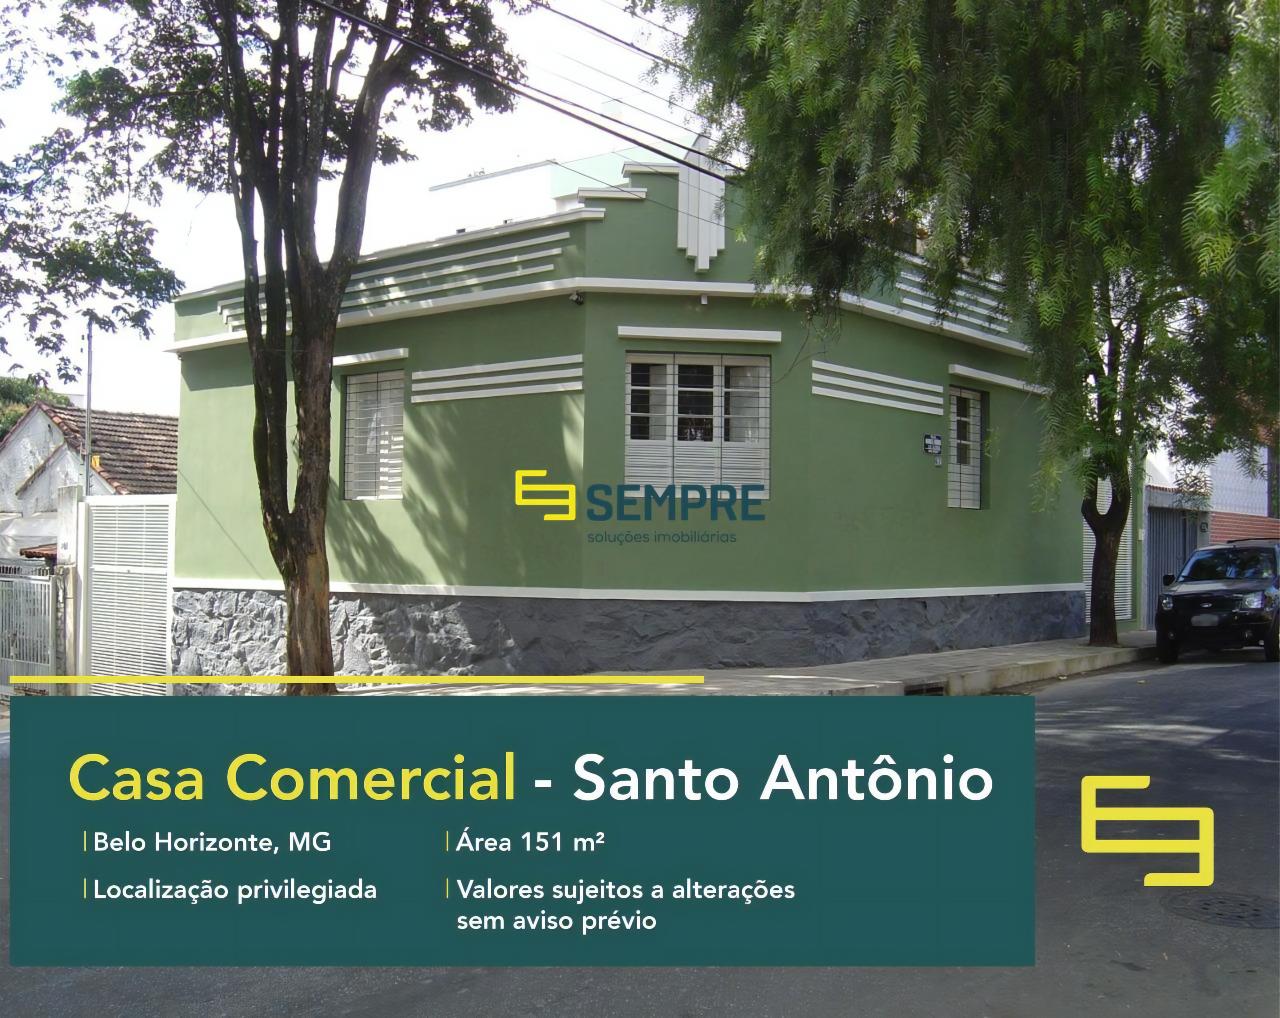 Casa comercial no Santo Antônio em Belo Horizonte, excelente localização. O estabelecimento comercial conta com área de 151 m².